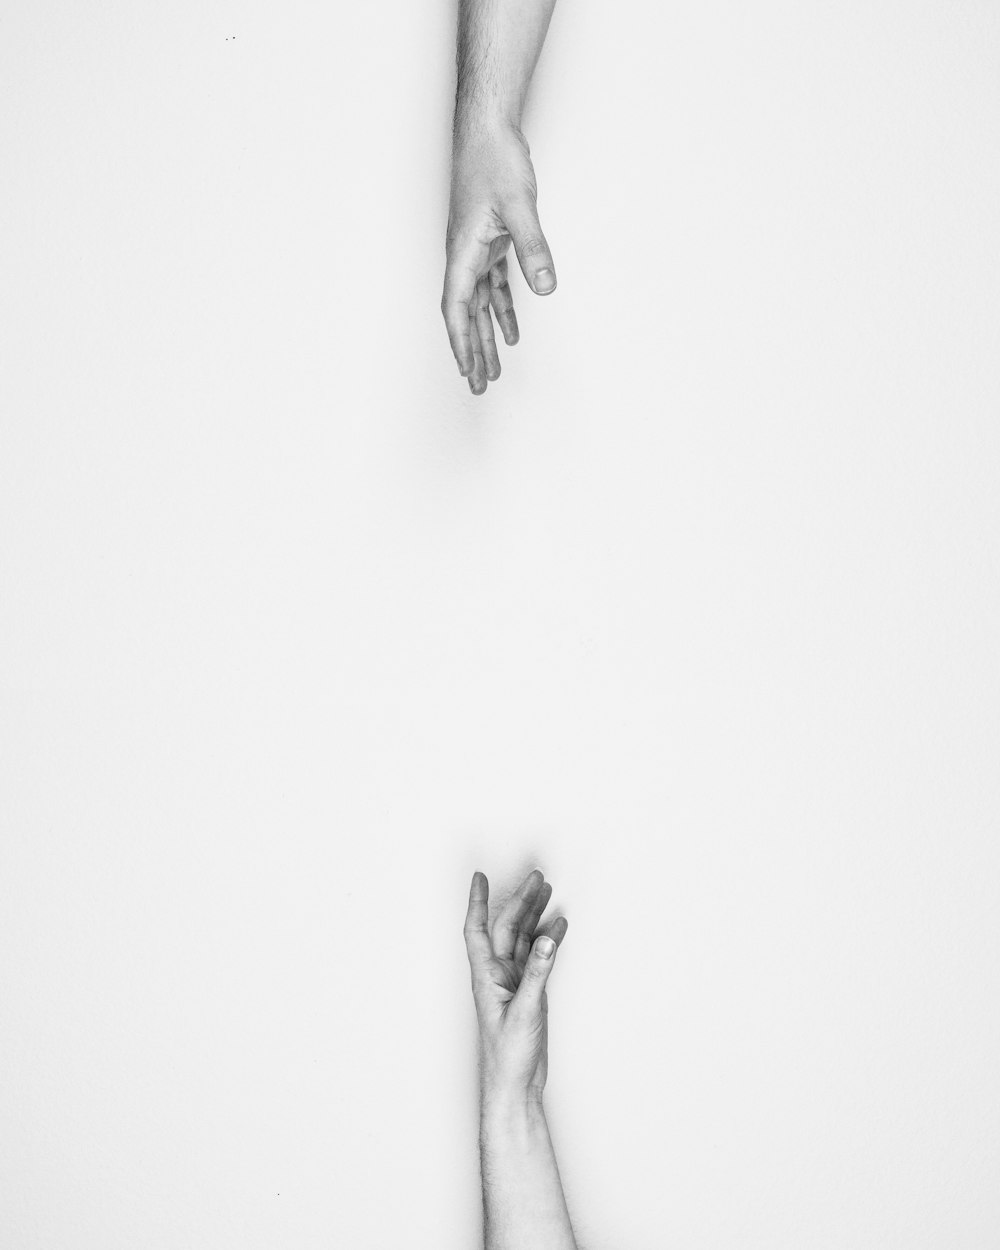 Dos manos que se alcanzan la una a la otra.